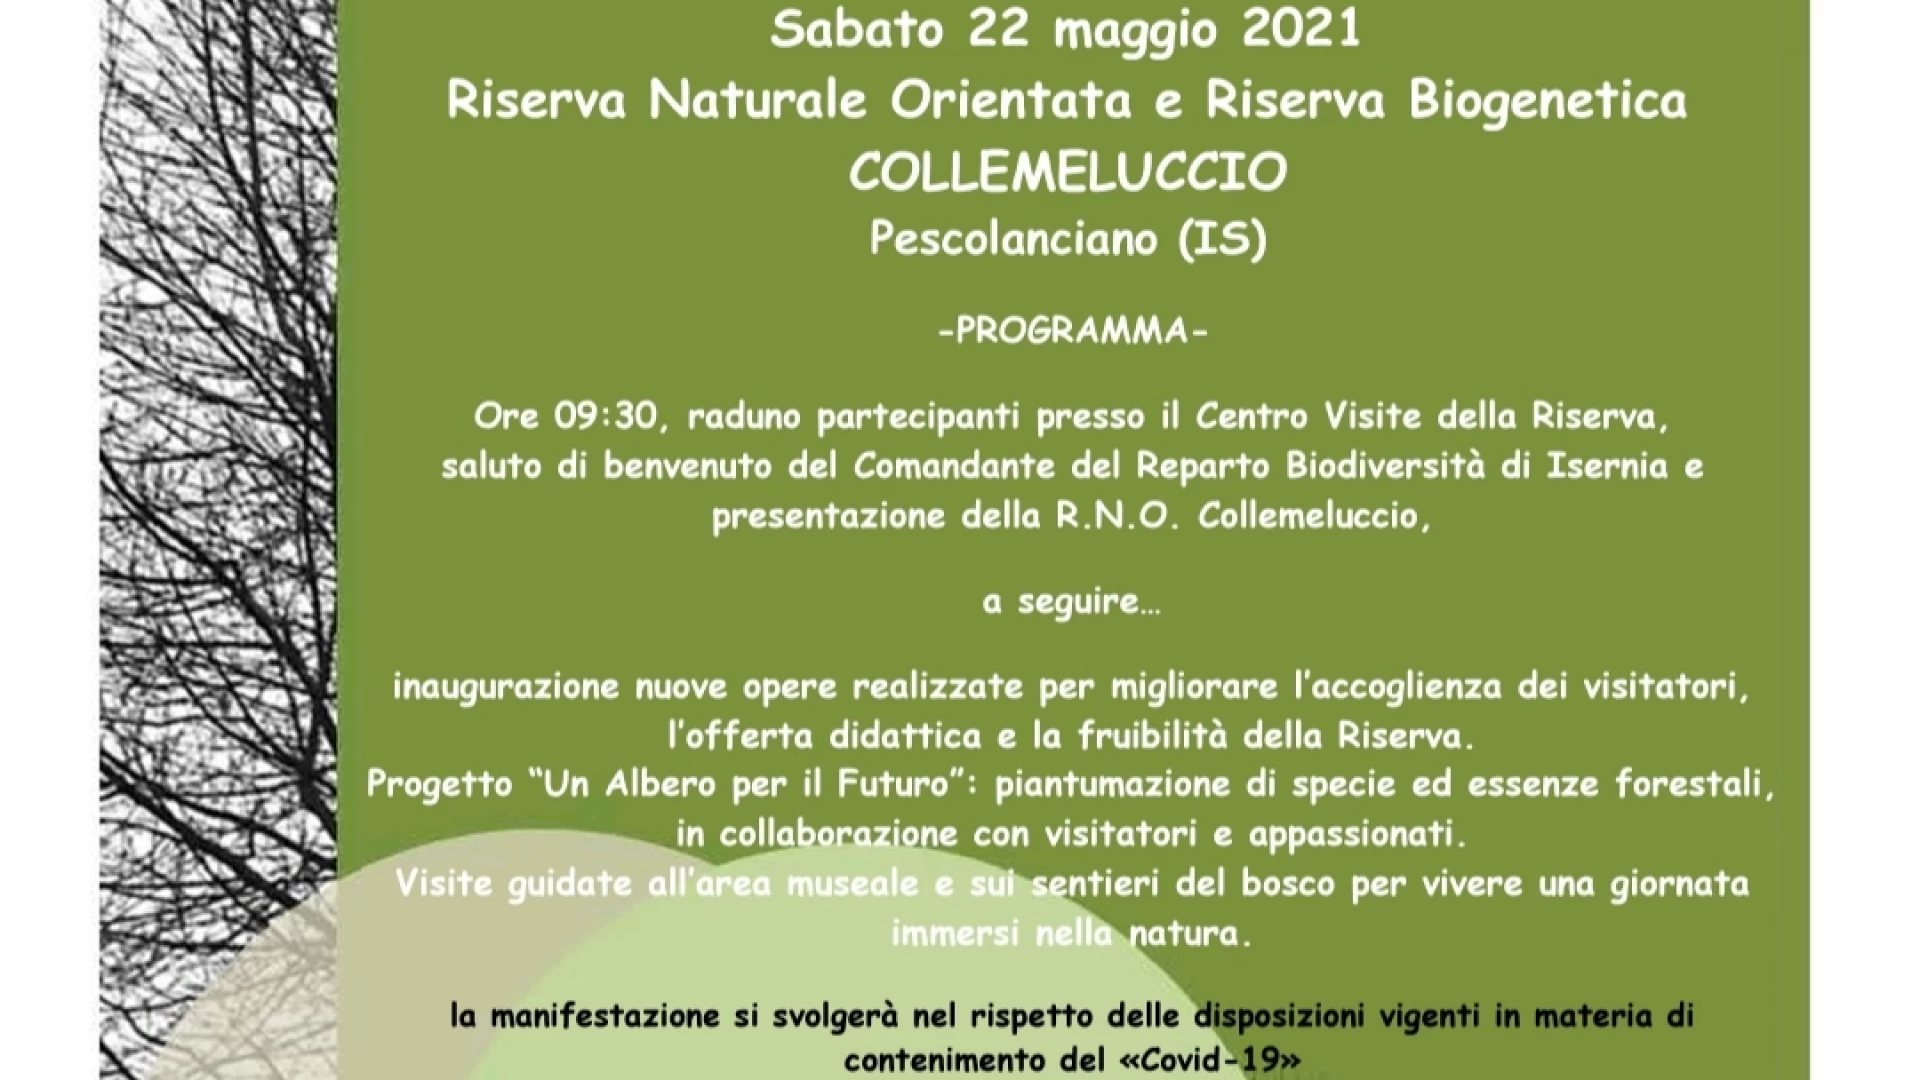 Giornata Internazionale della Biodiversità, sabato 22 maggio apertura straordinaria della Riserva di Collemeluccio